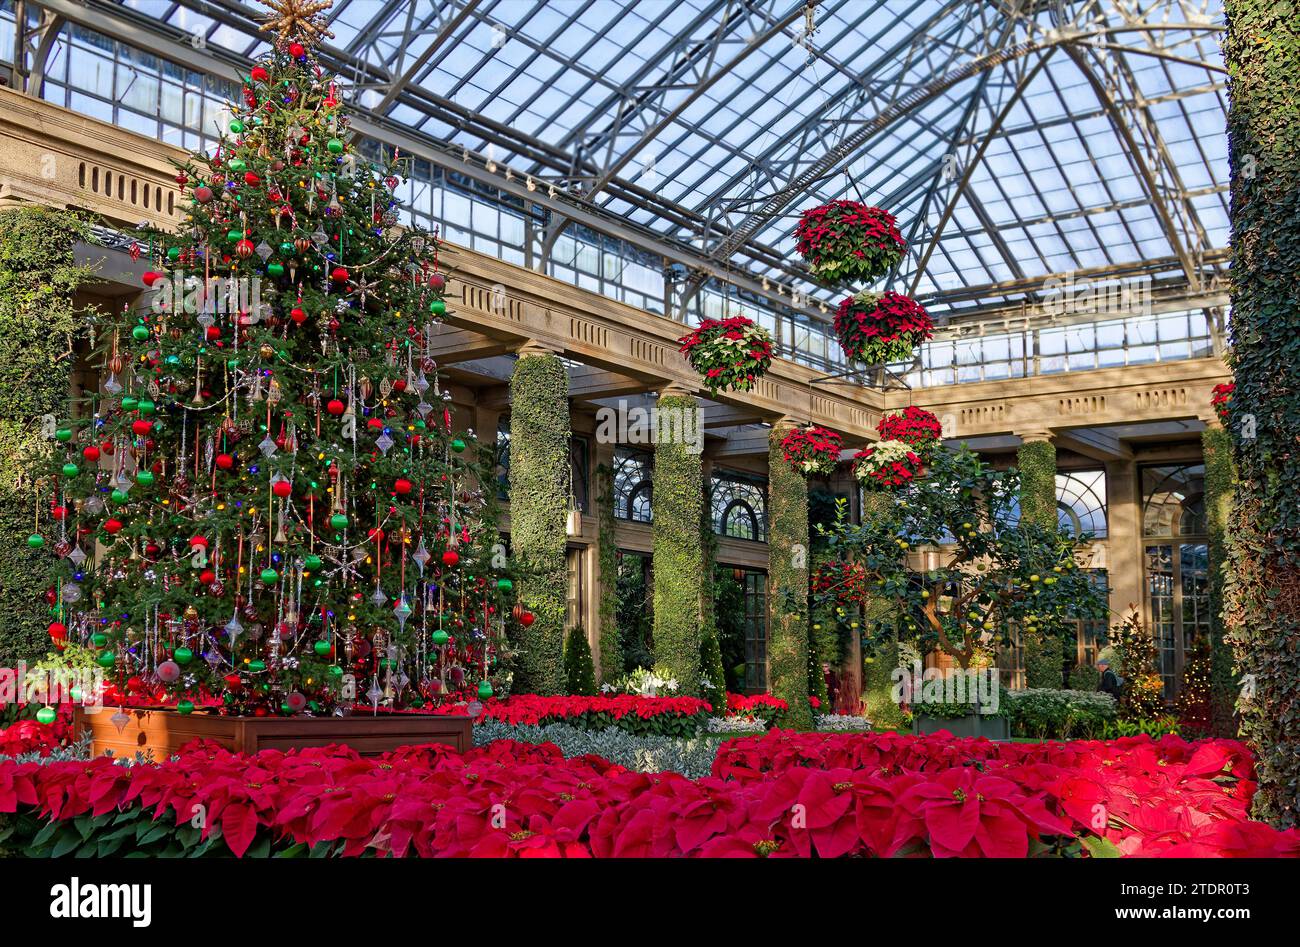 Elaborata esposizione natalizia; soffitto in vetro; cestini sospesi; puntette rosse; albero sempreverde decorato; colonne ricoperte di vite, festive, festive, colorf Foto Stock